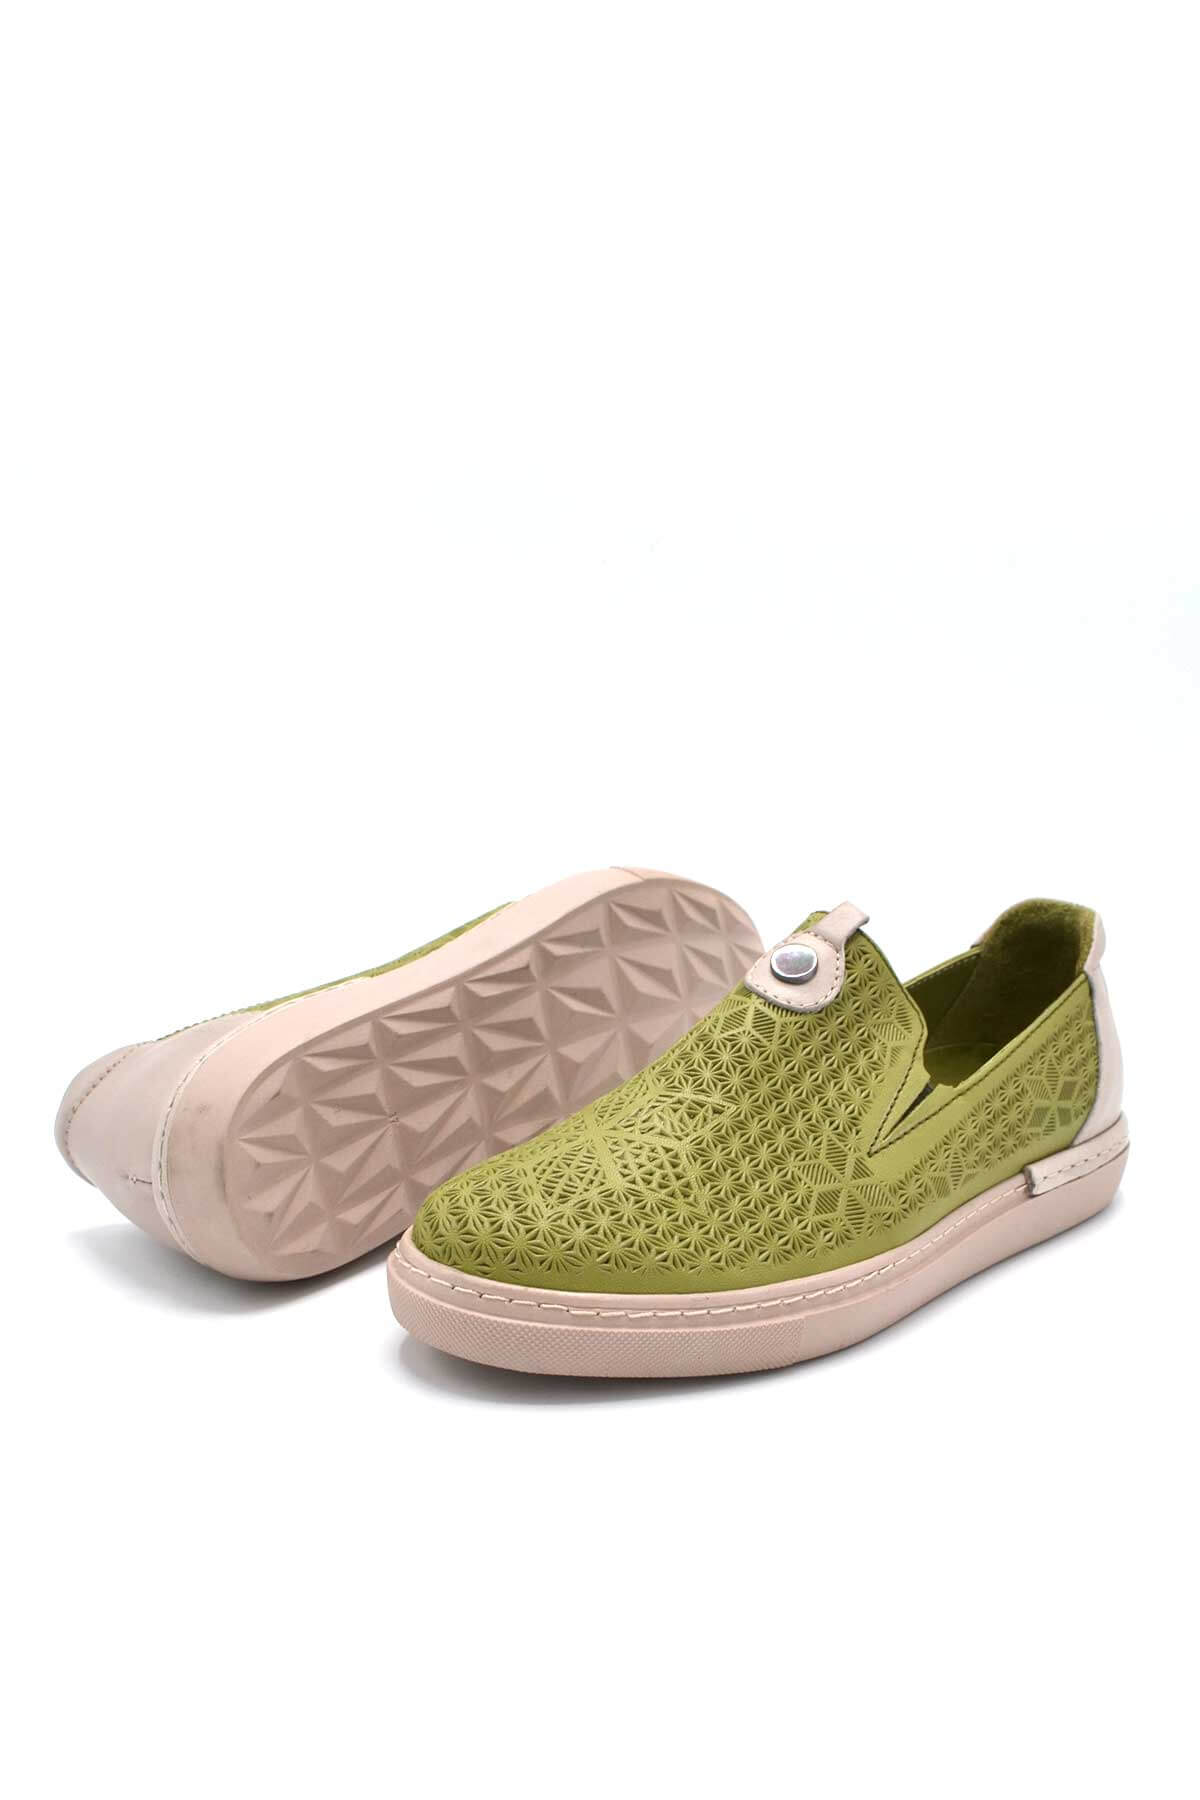 Kadın Spor Deri Sneakers Yeşil 2211302Y - Thumbnail